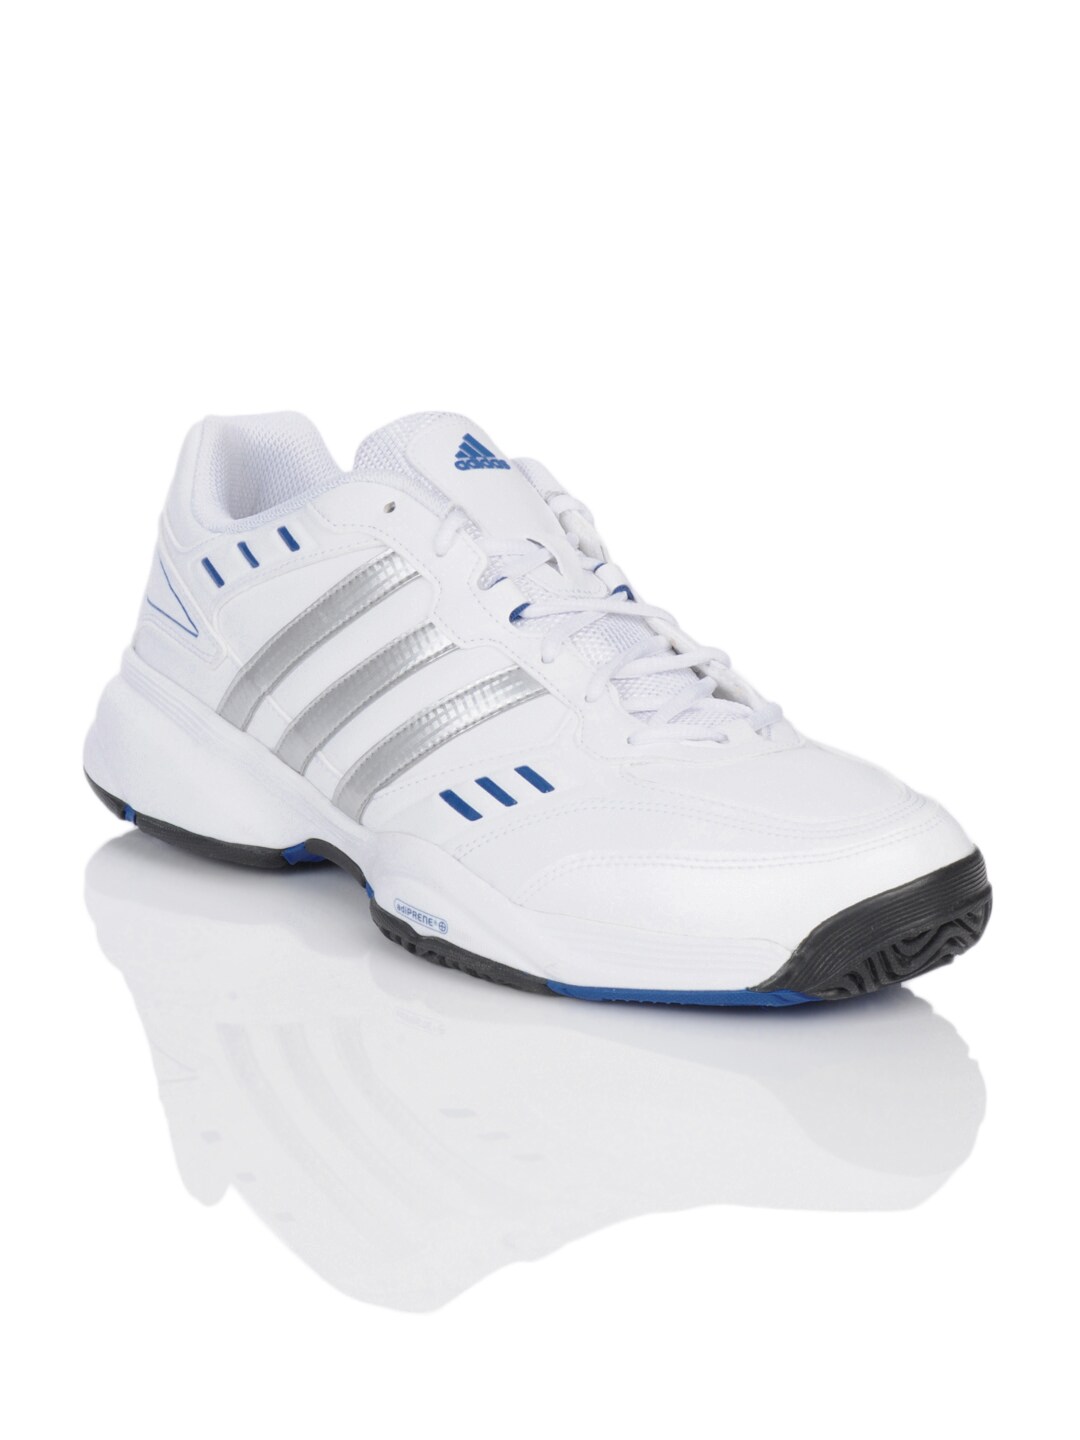 ADIDAS Men White Elite Speed Sports Shoes